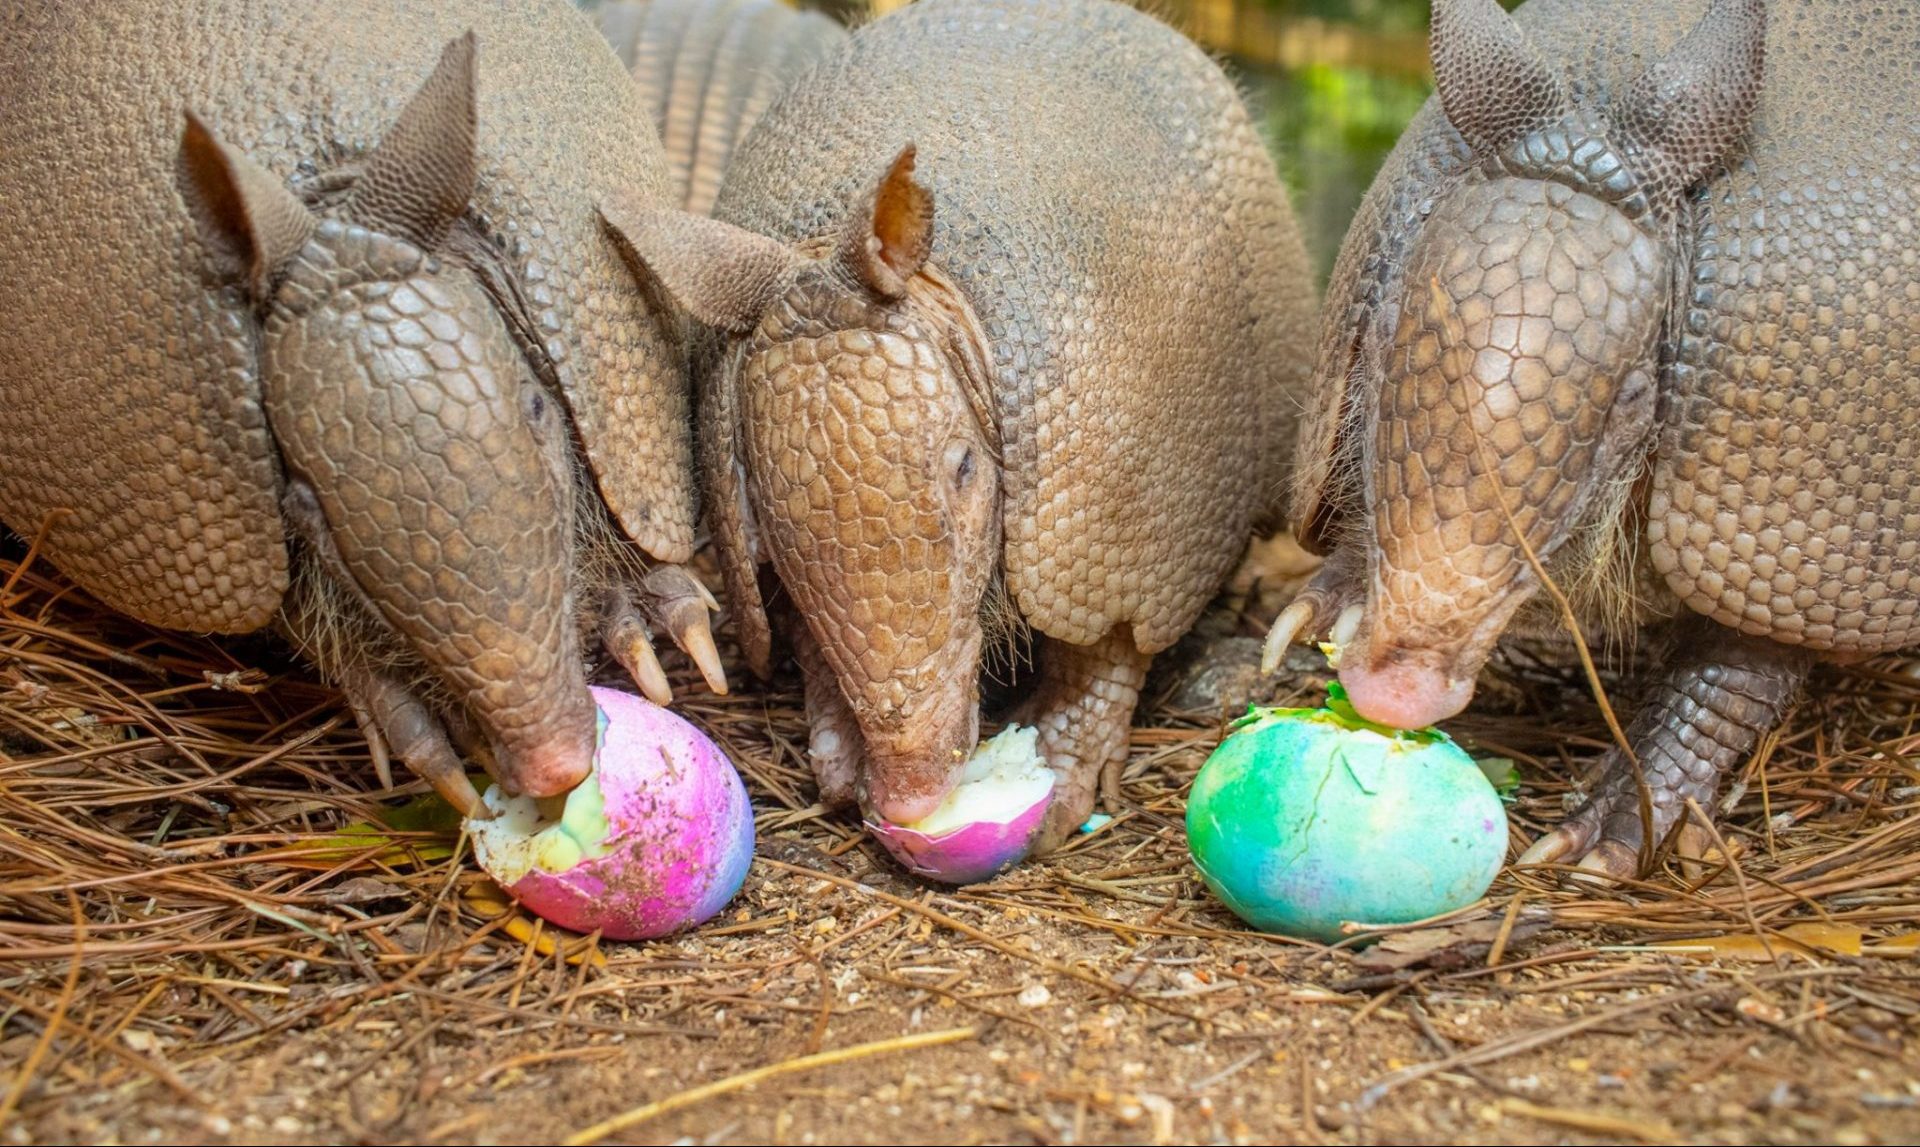 Three armadillos eating hardboiled Easter eggs